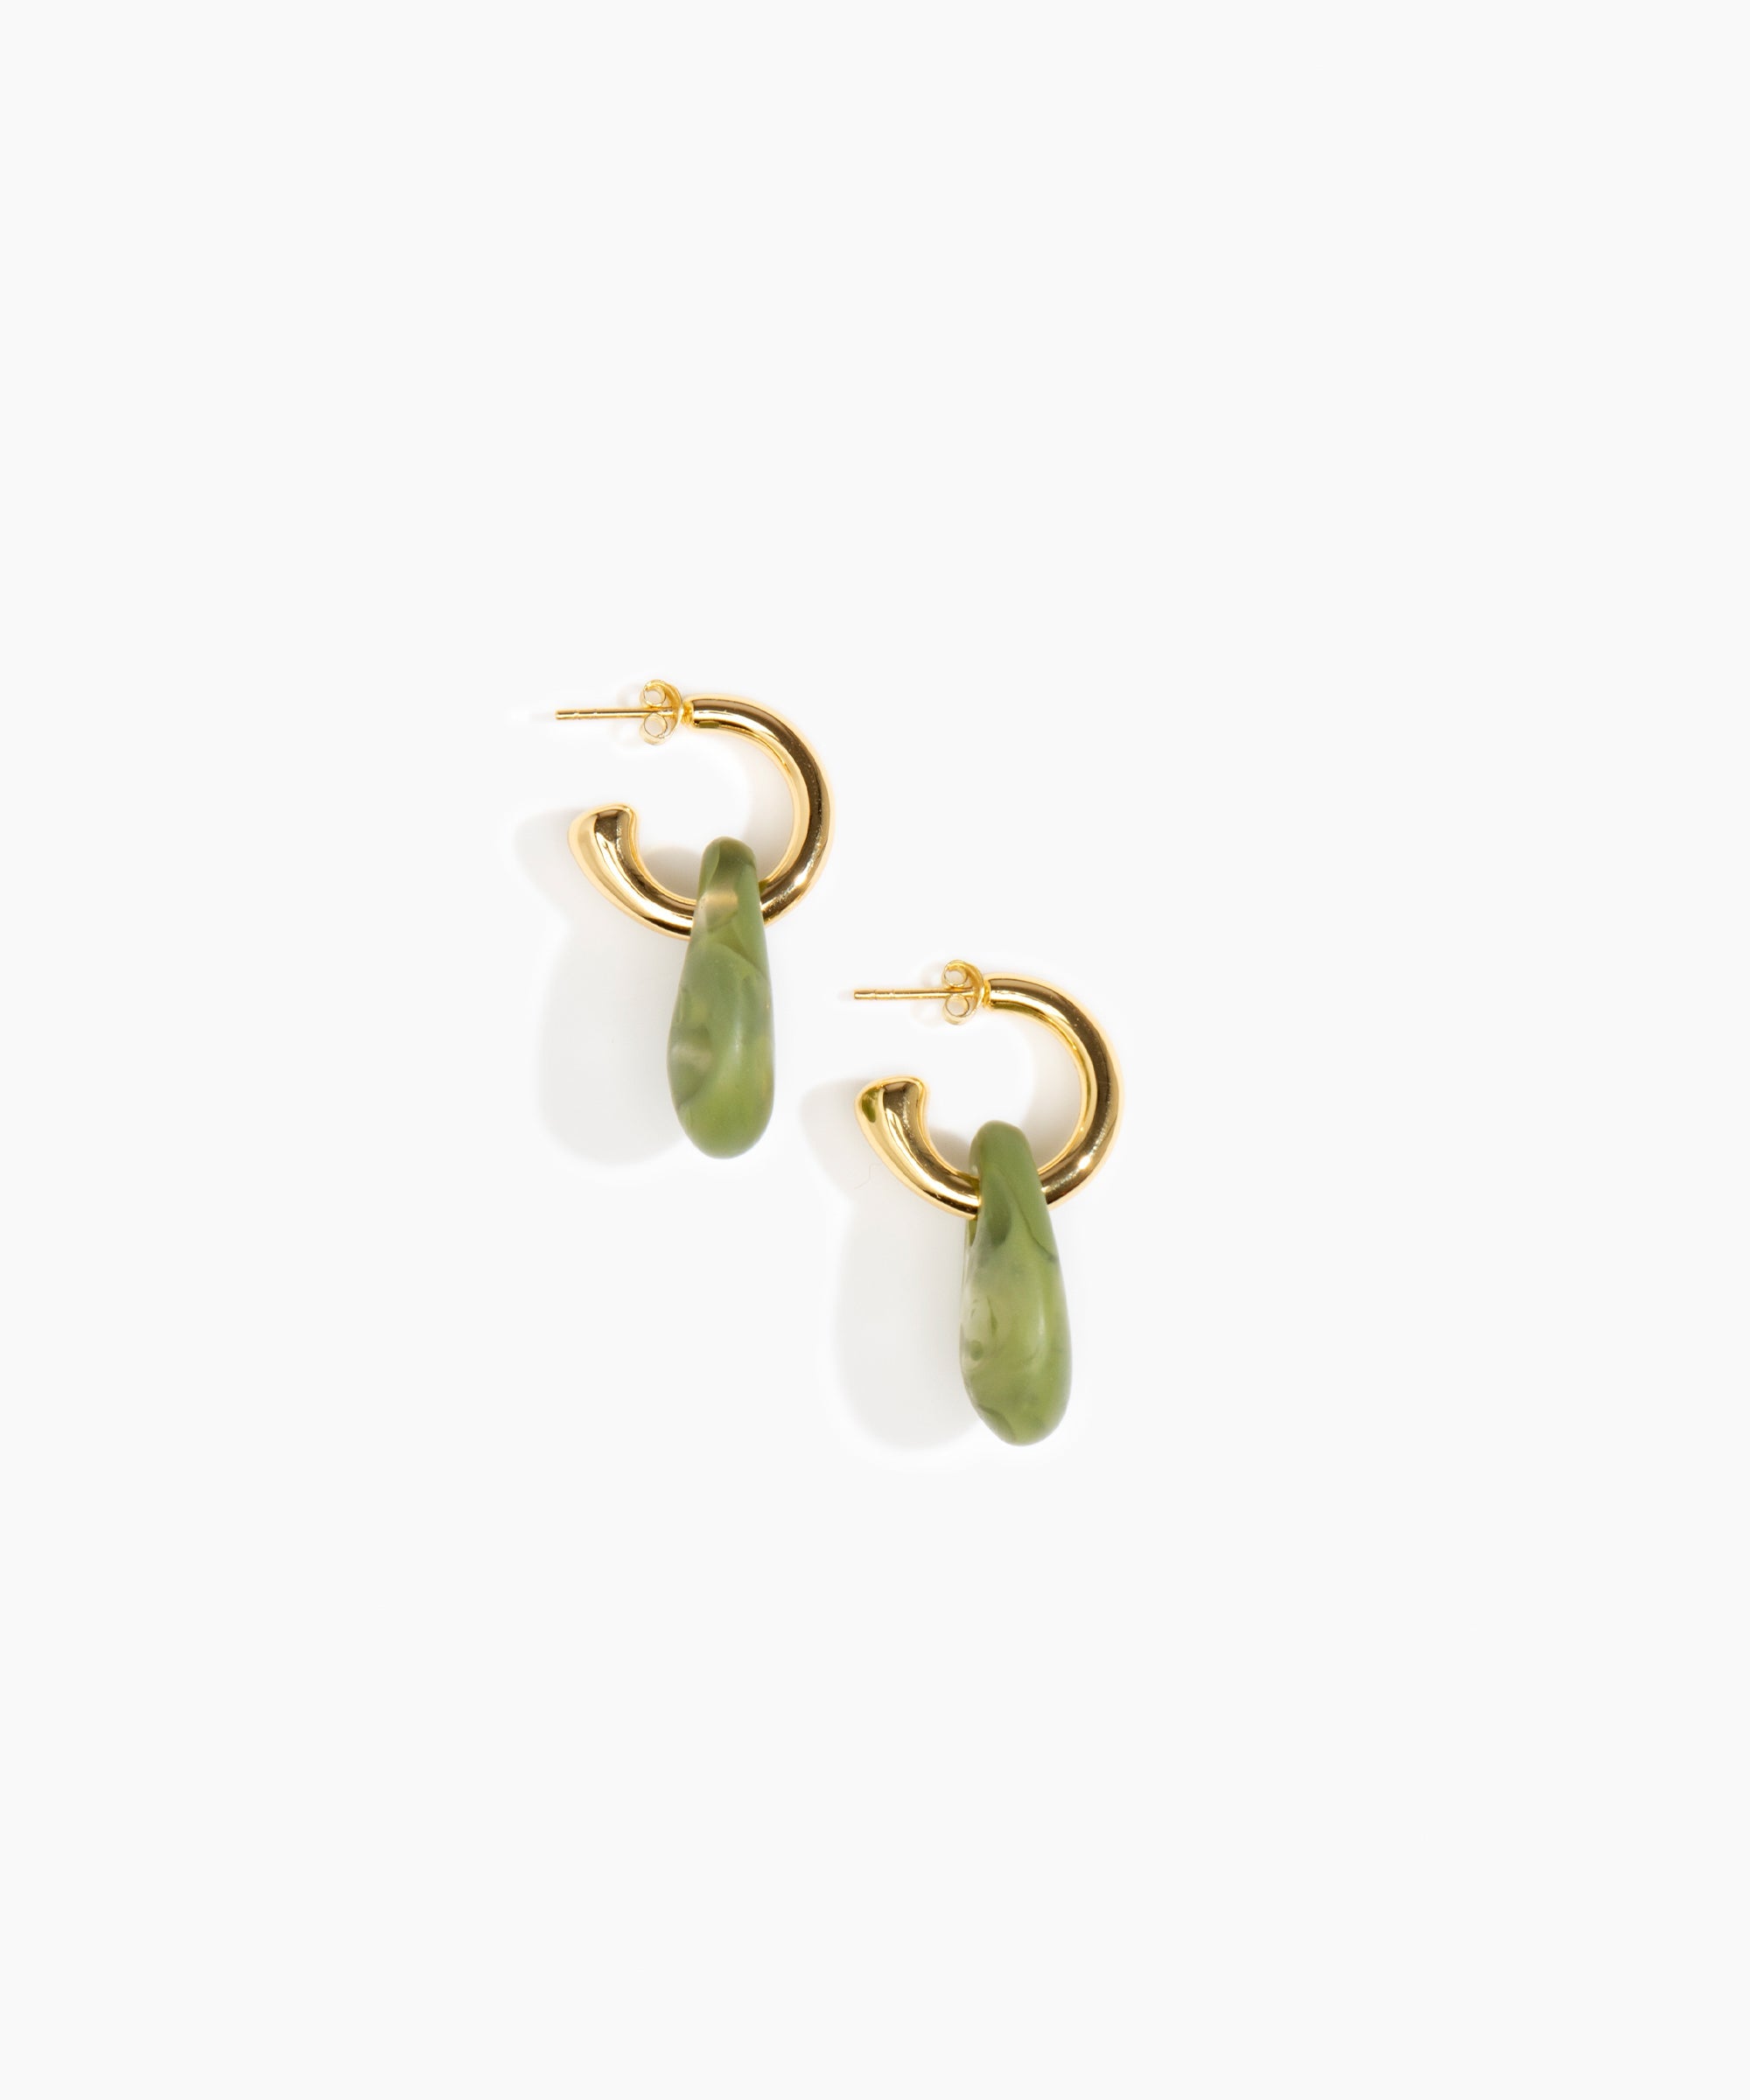 Dinosaur Designs Small Rock Hoop Earrings Earrings in Olive color resin with Brass Hoop Material